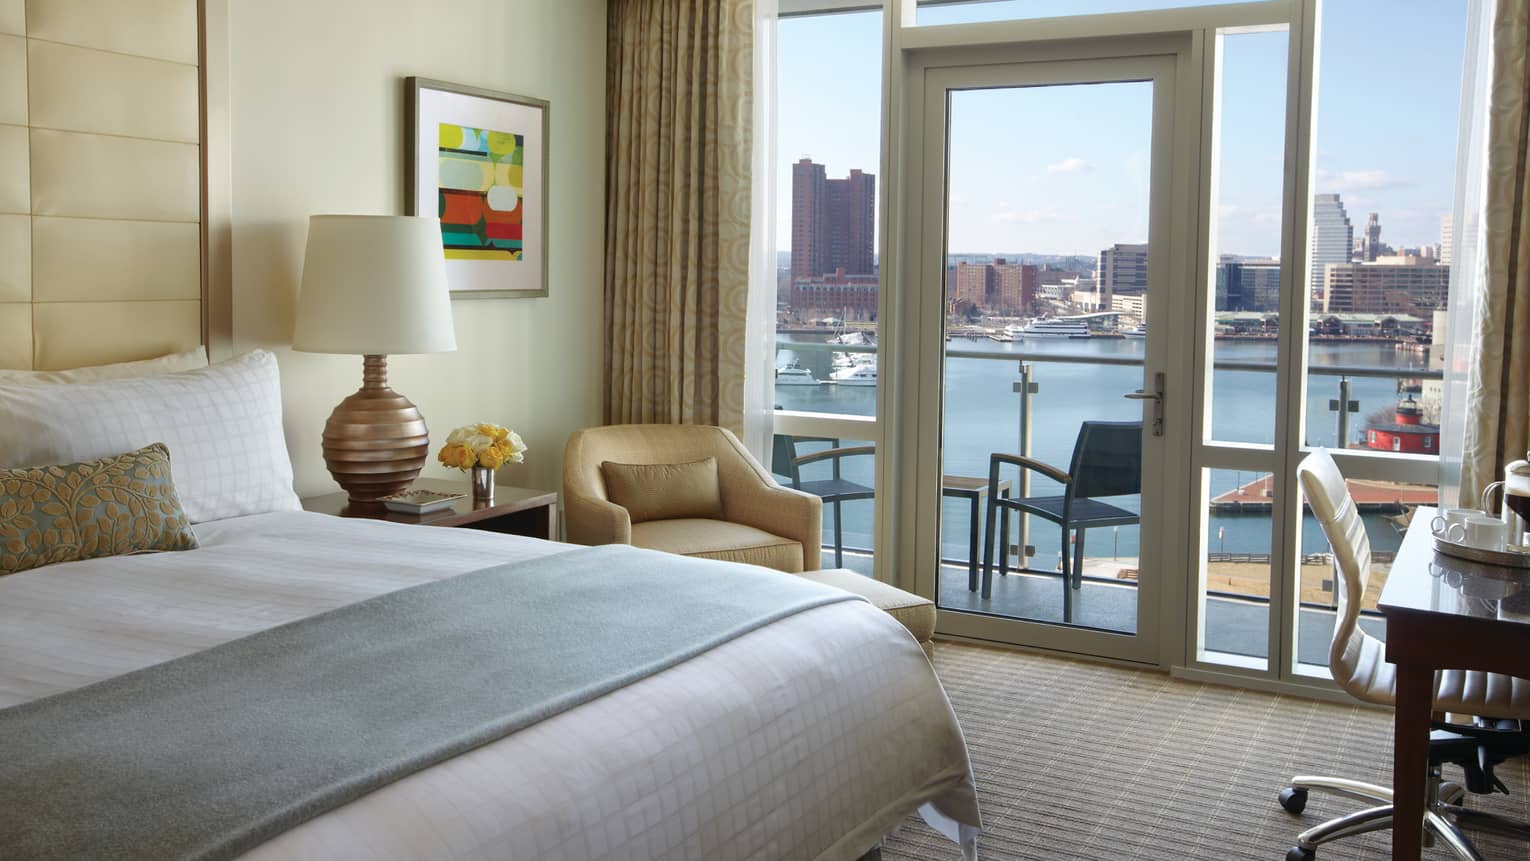 Edge of bed with folded blue blanket, armchair by glass door, balcony door, harbour view